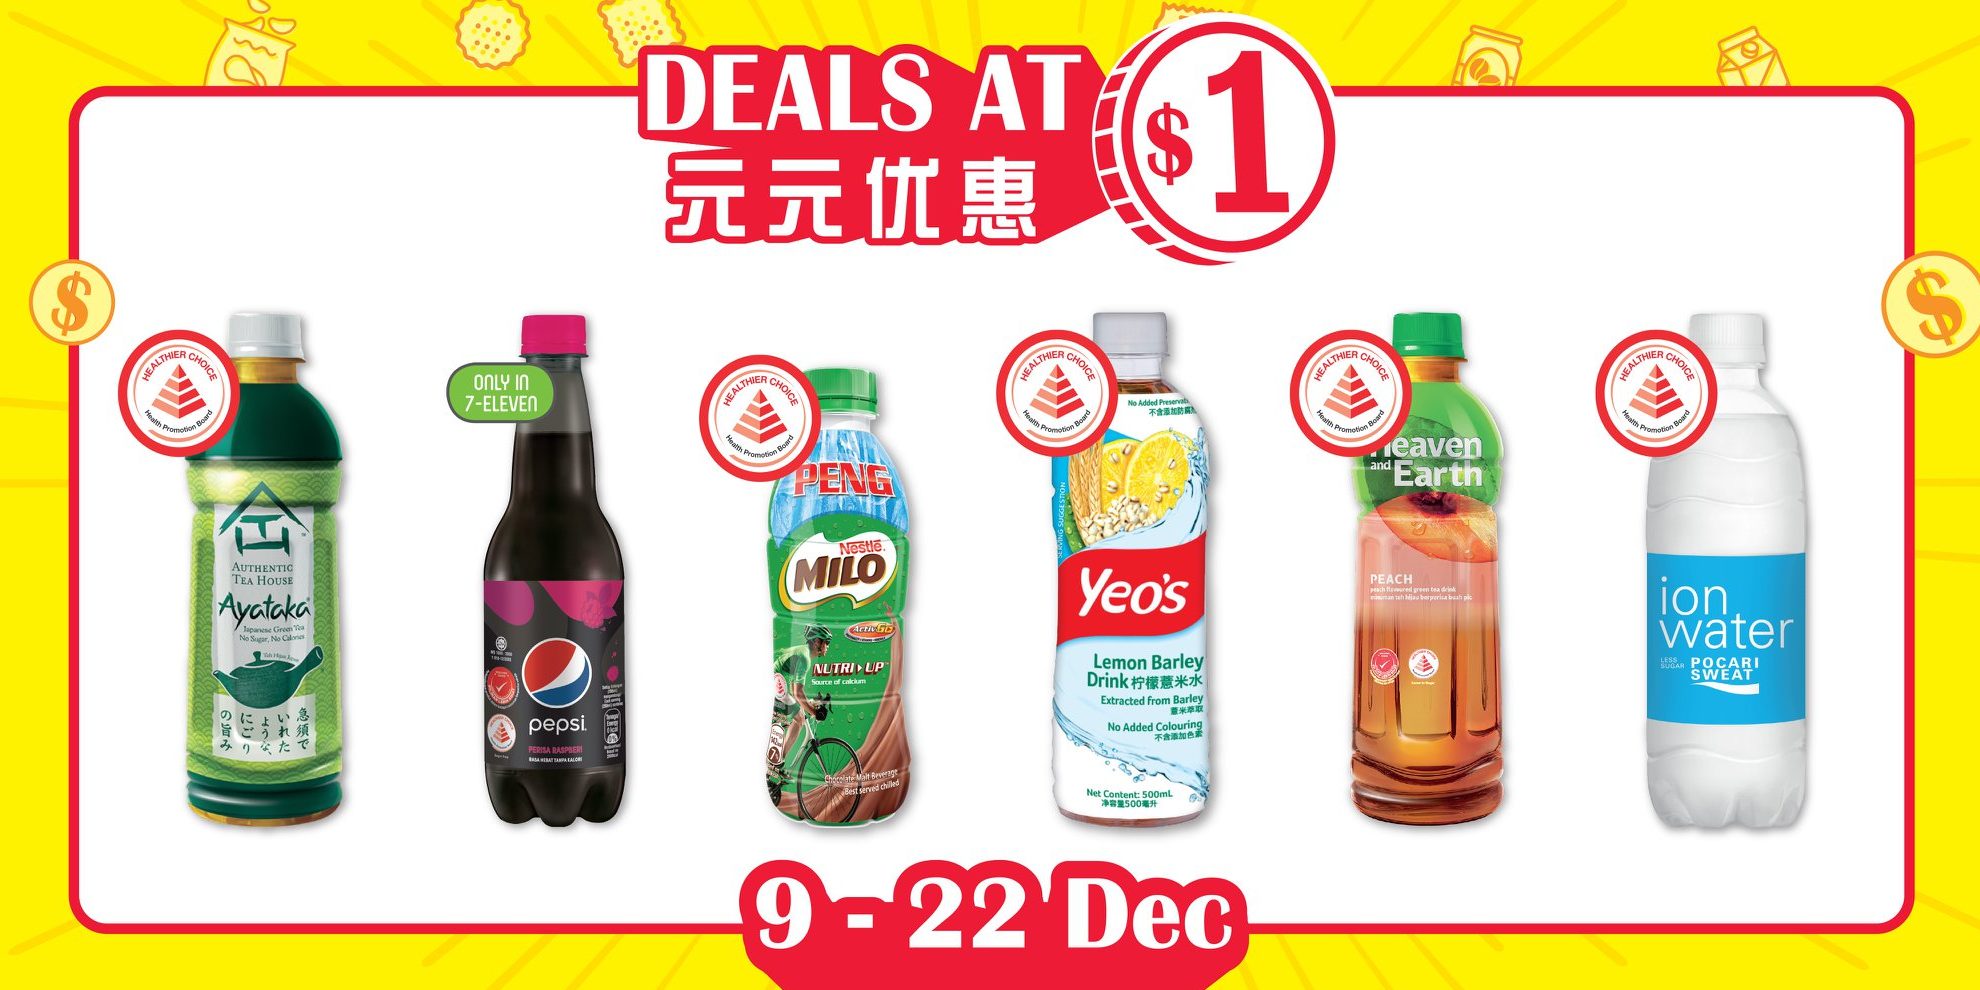 7-Eleven Singapore Deals at $1 Promotion 9-22 Dec 2020